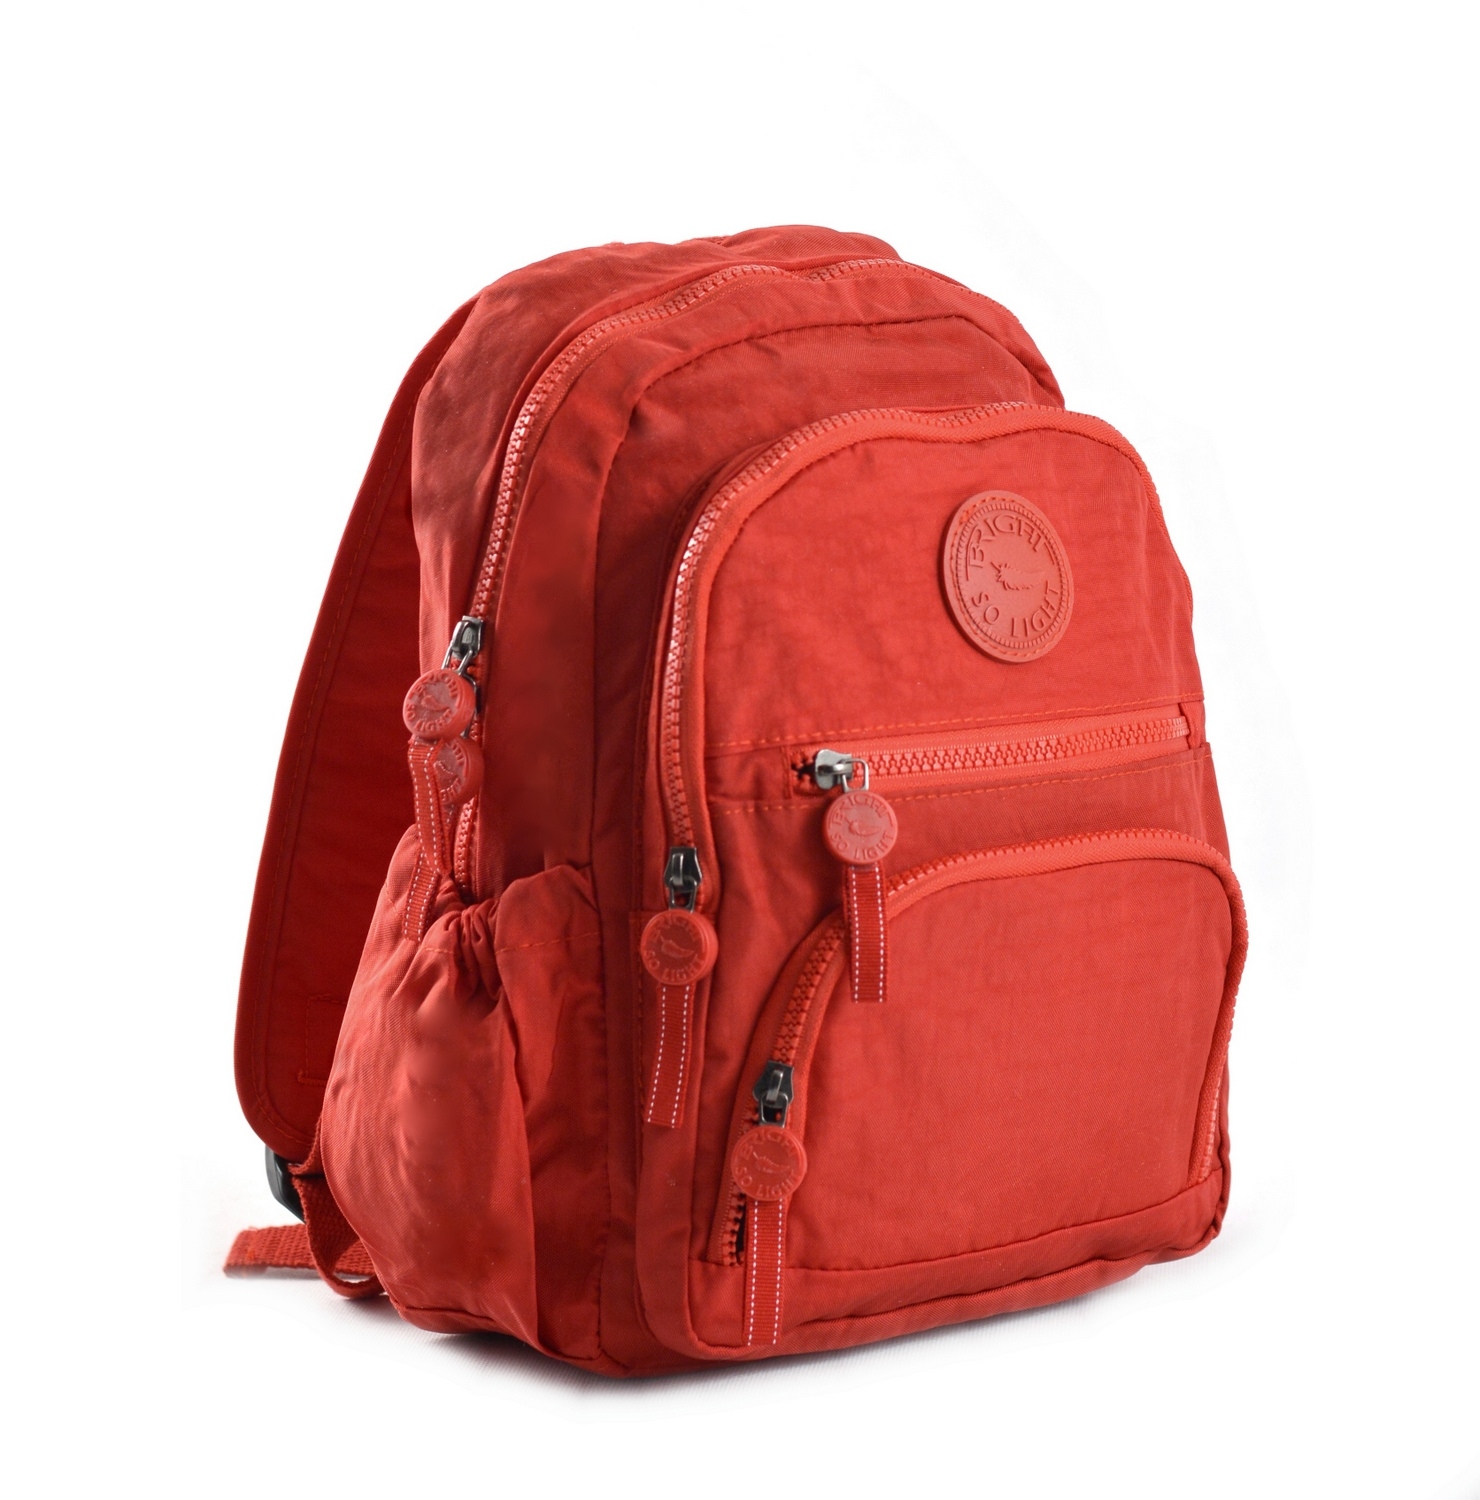 BRIGHT Turistický batoh Bright so light Červený, 24 x 12 x 31 (BR18-TKB1620-00TX)